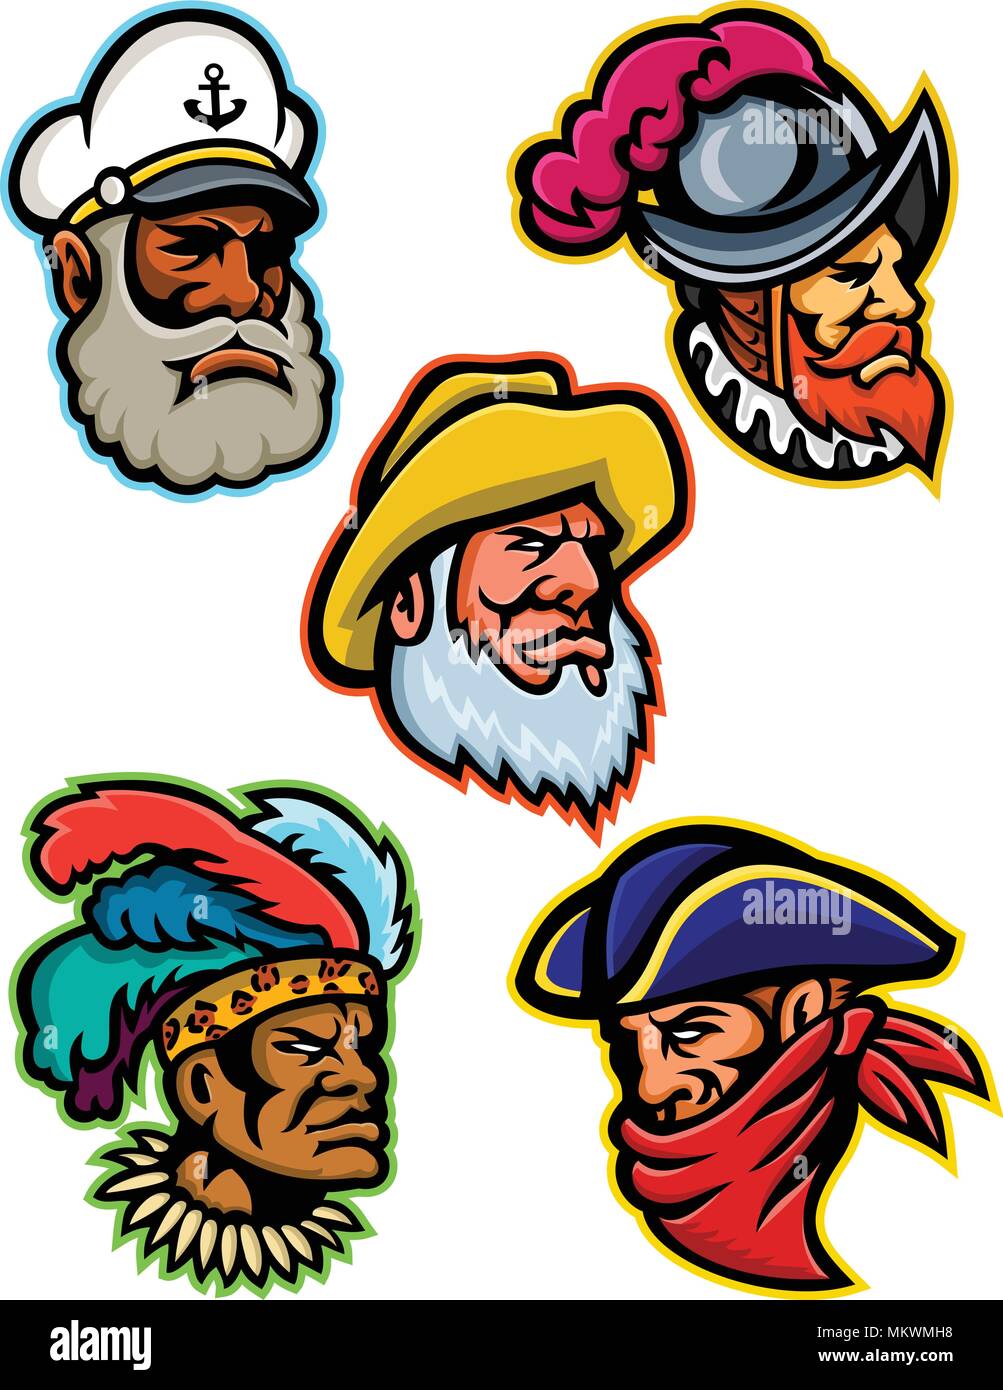 L'icône illustration mascotte ensemble de têtes d'un conquistador ou explorer, capitaine ou patron, le vieux pêcheur, et un guerrier zoulou 379 ou brigand. Illustration de Vecteur